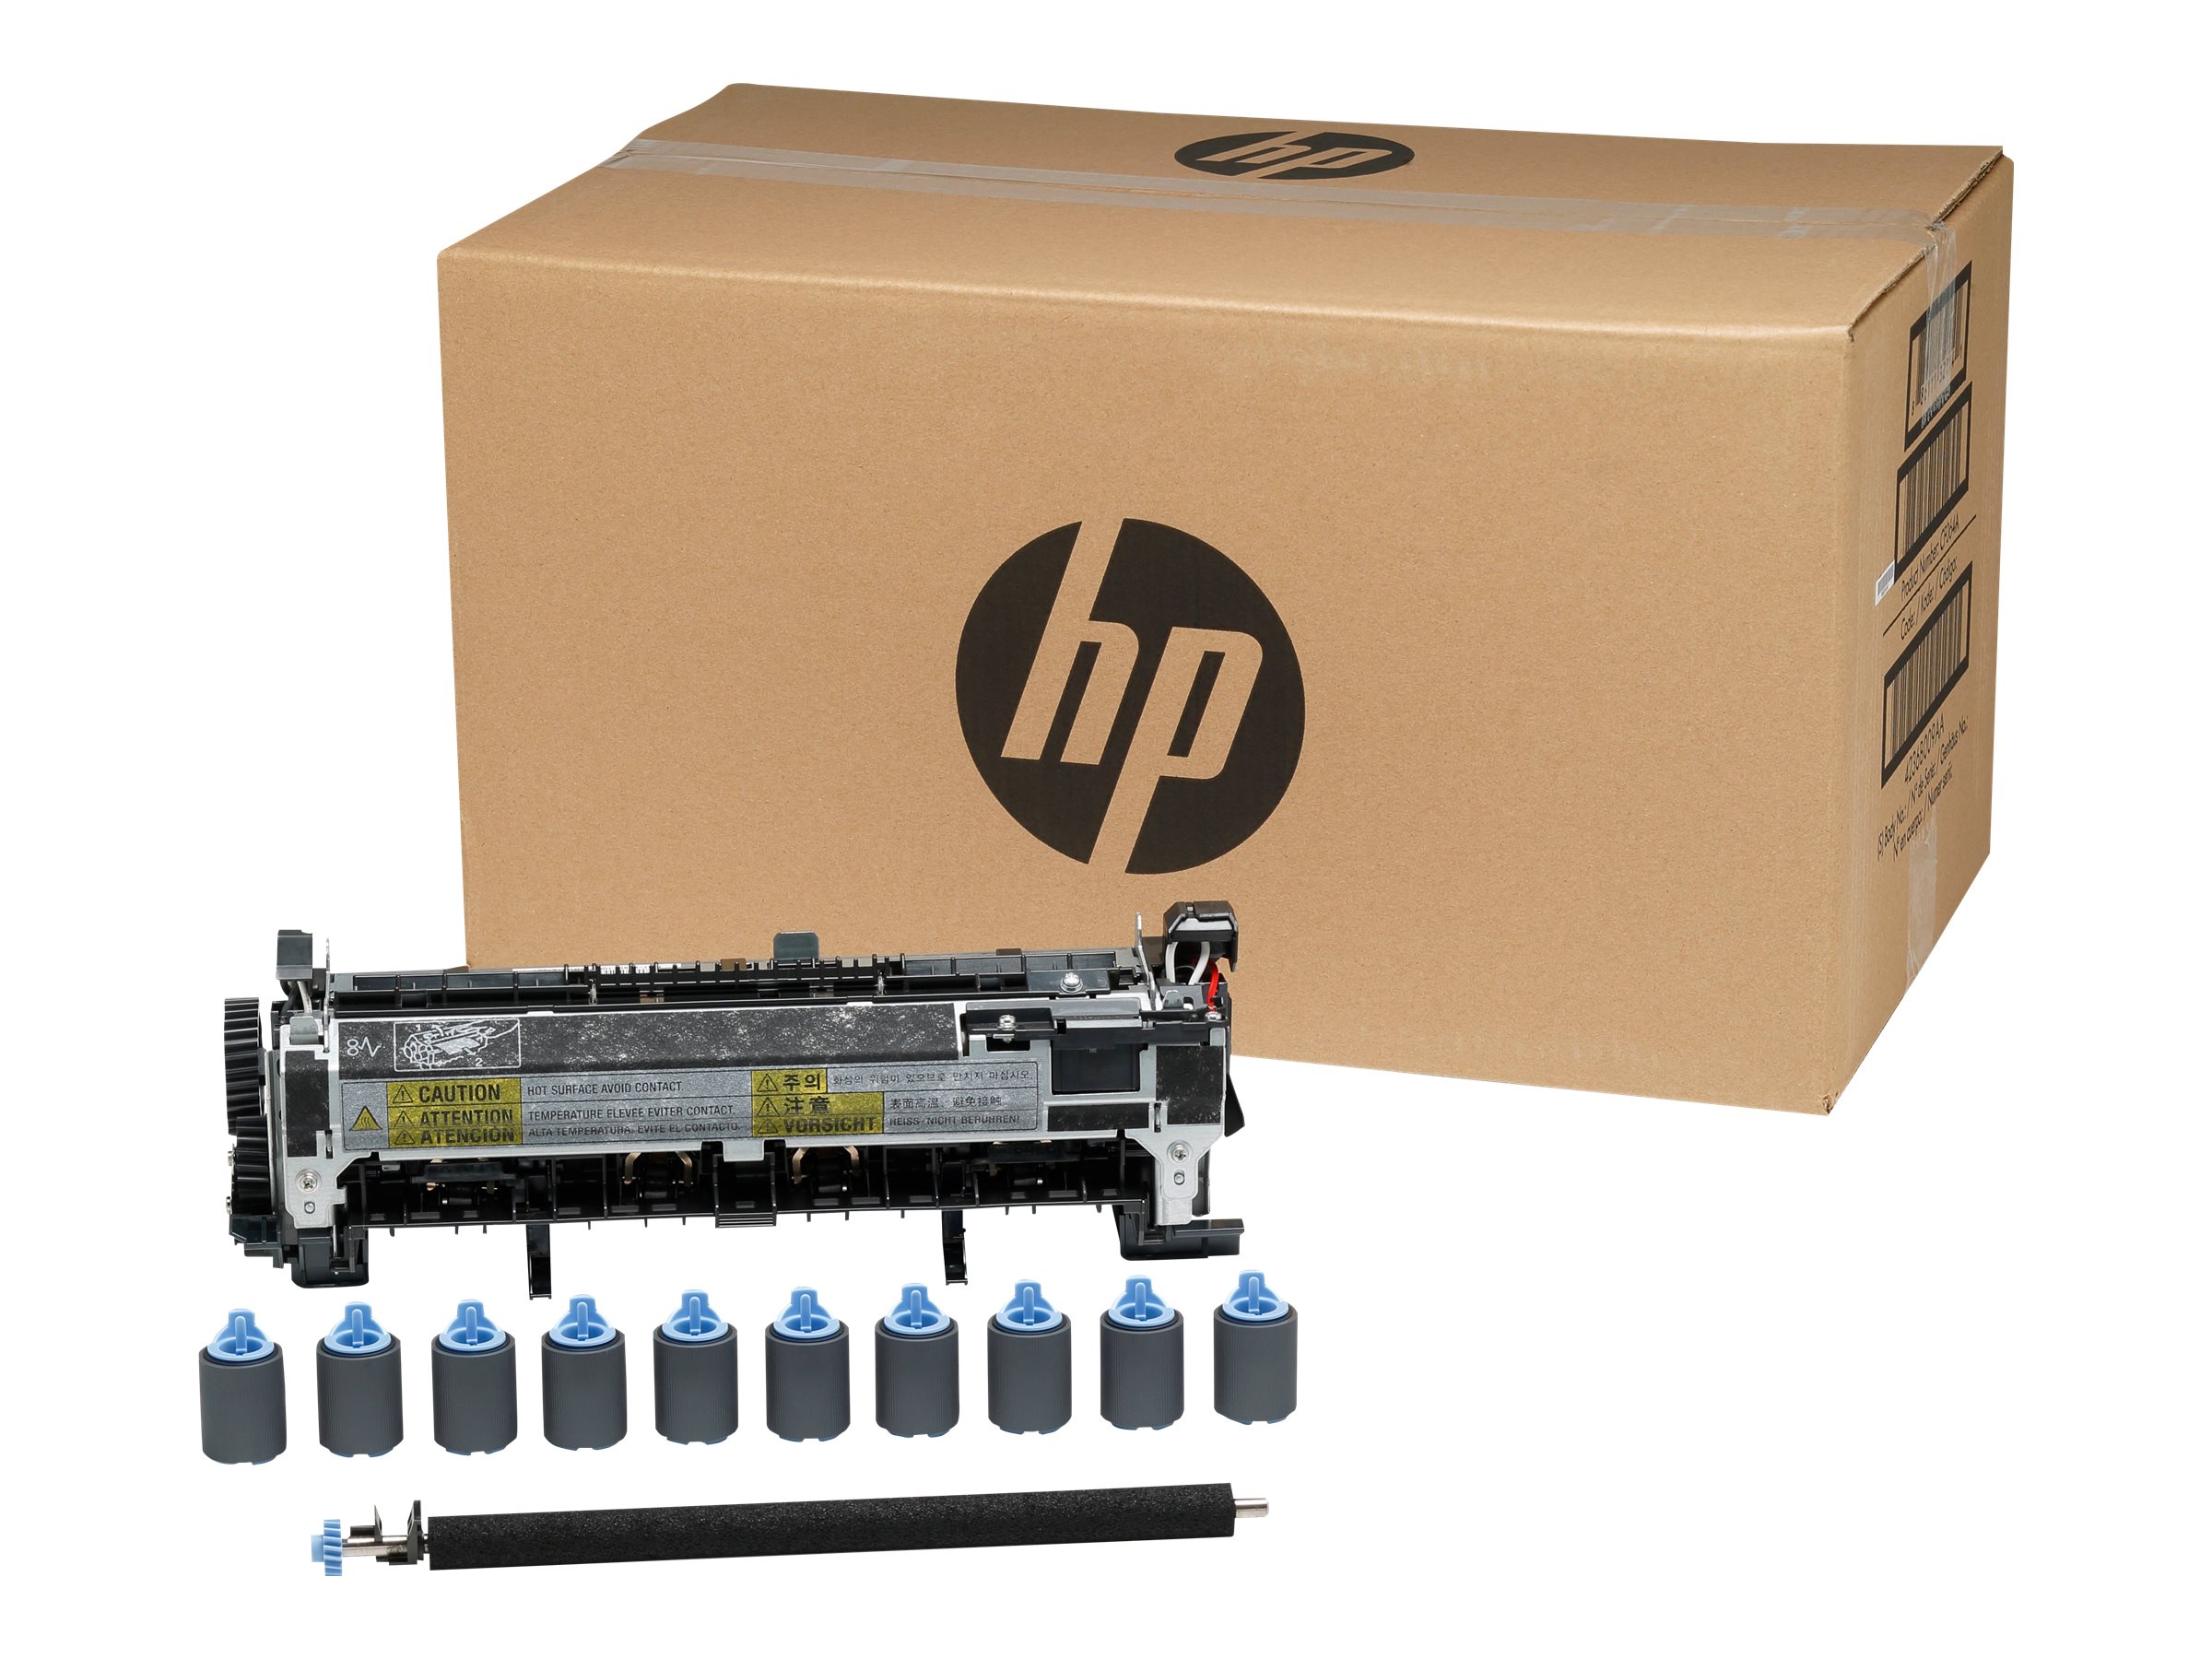 HP - Kit d'entretien - pour LaserJet Enterprise 600 M601, 600 M602, 600 M603 - CF065A - Autres consommables et kits d'entretien pour imprimante